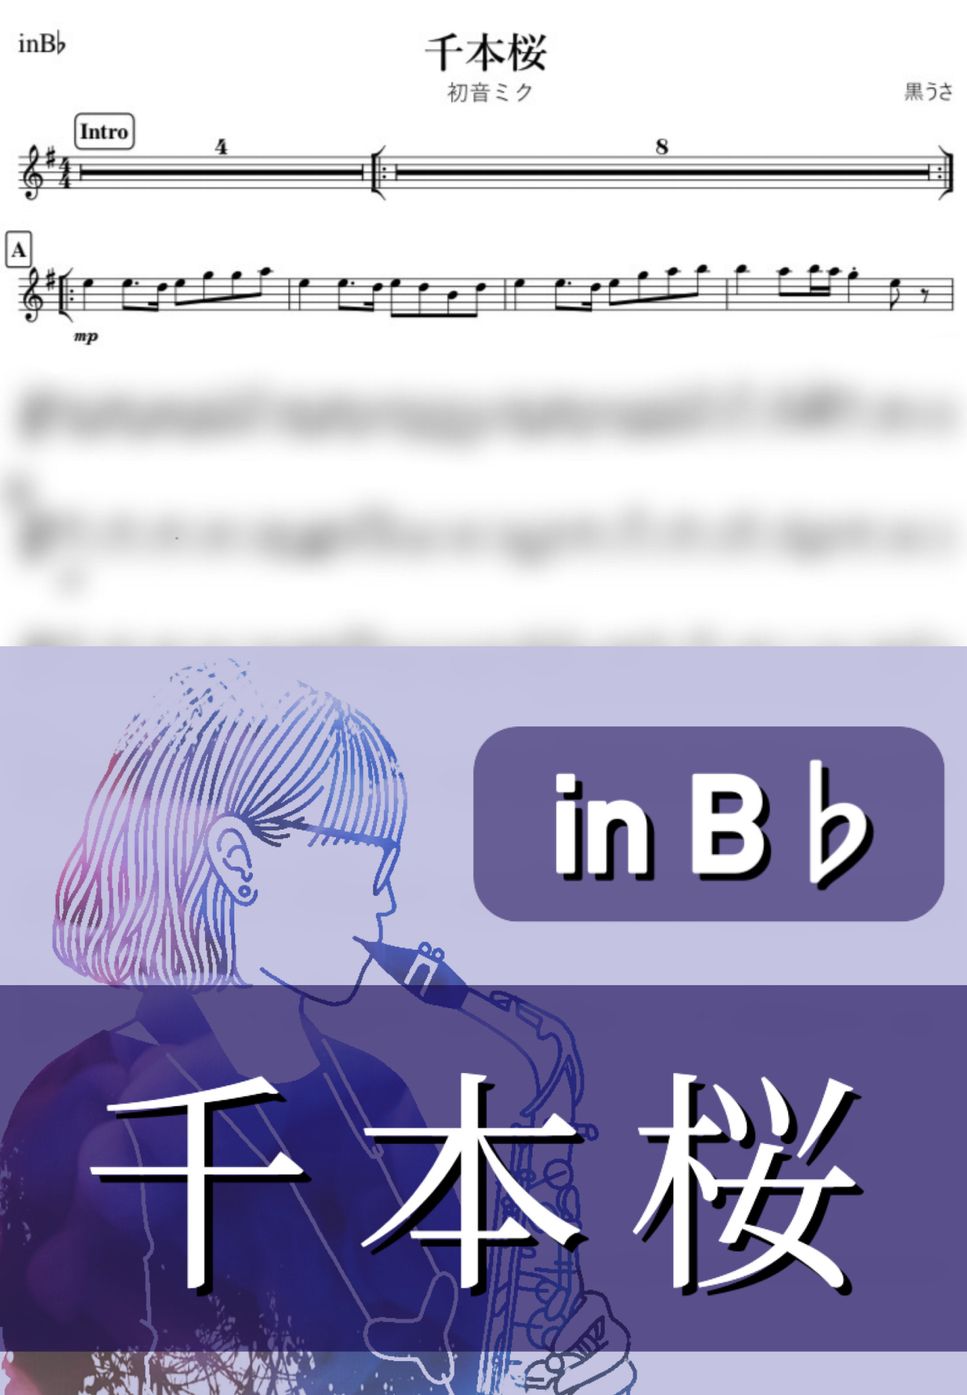 初音ミク - 千本桜 (B♭) by kanamusic